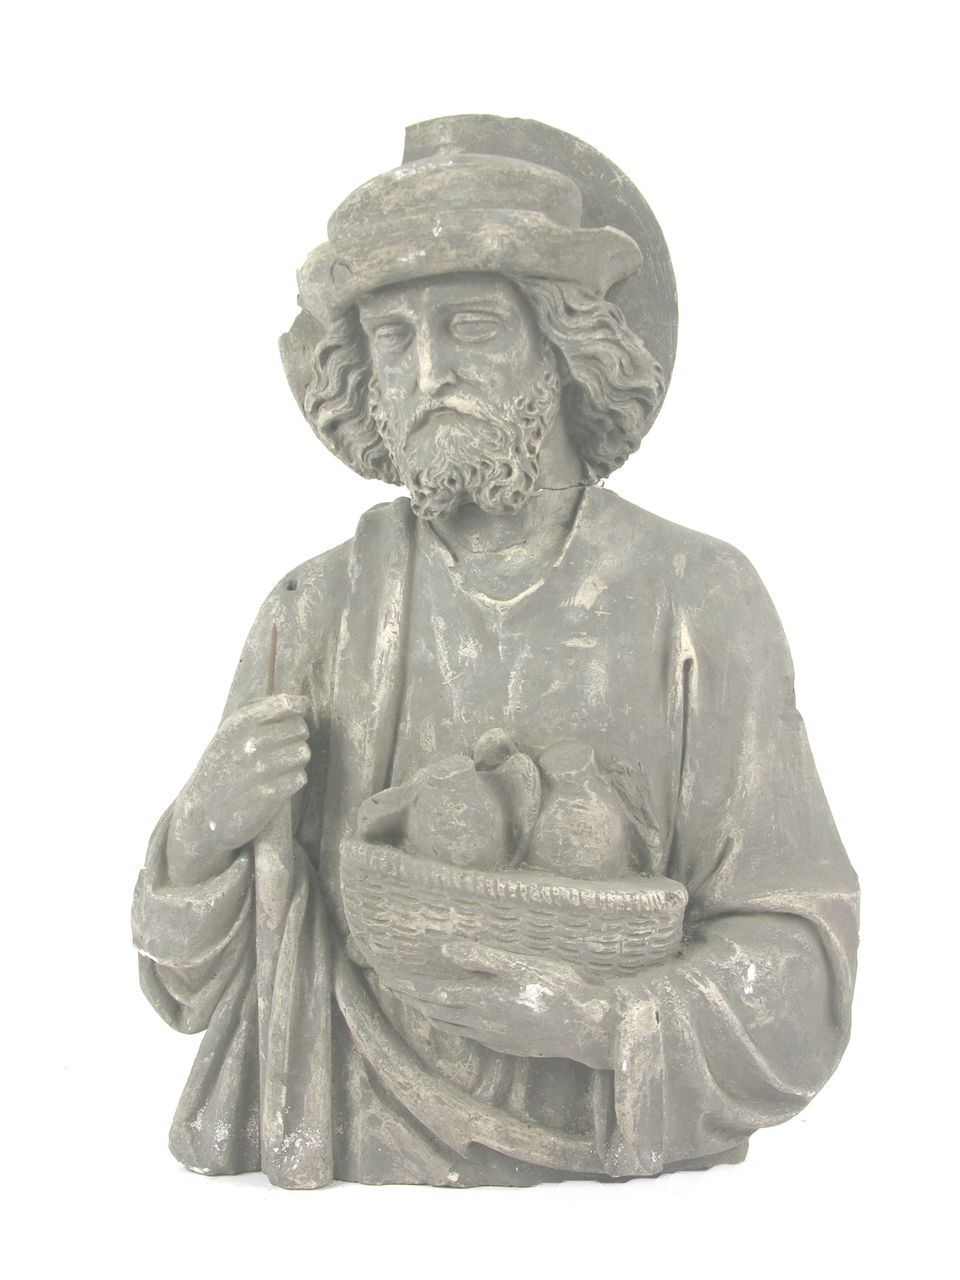 Heiliger Josef oder Joachim mit Opfergabe (Historisches Museum der Pfalz, Speyer CC BY)